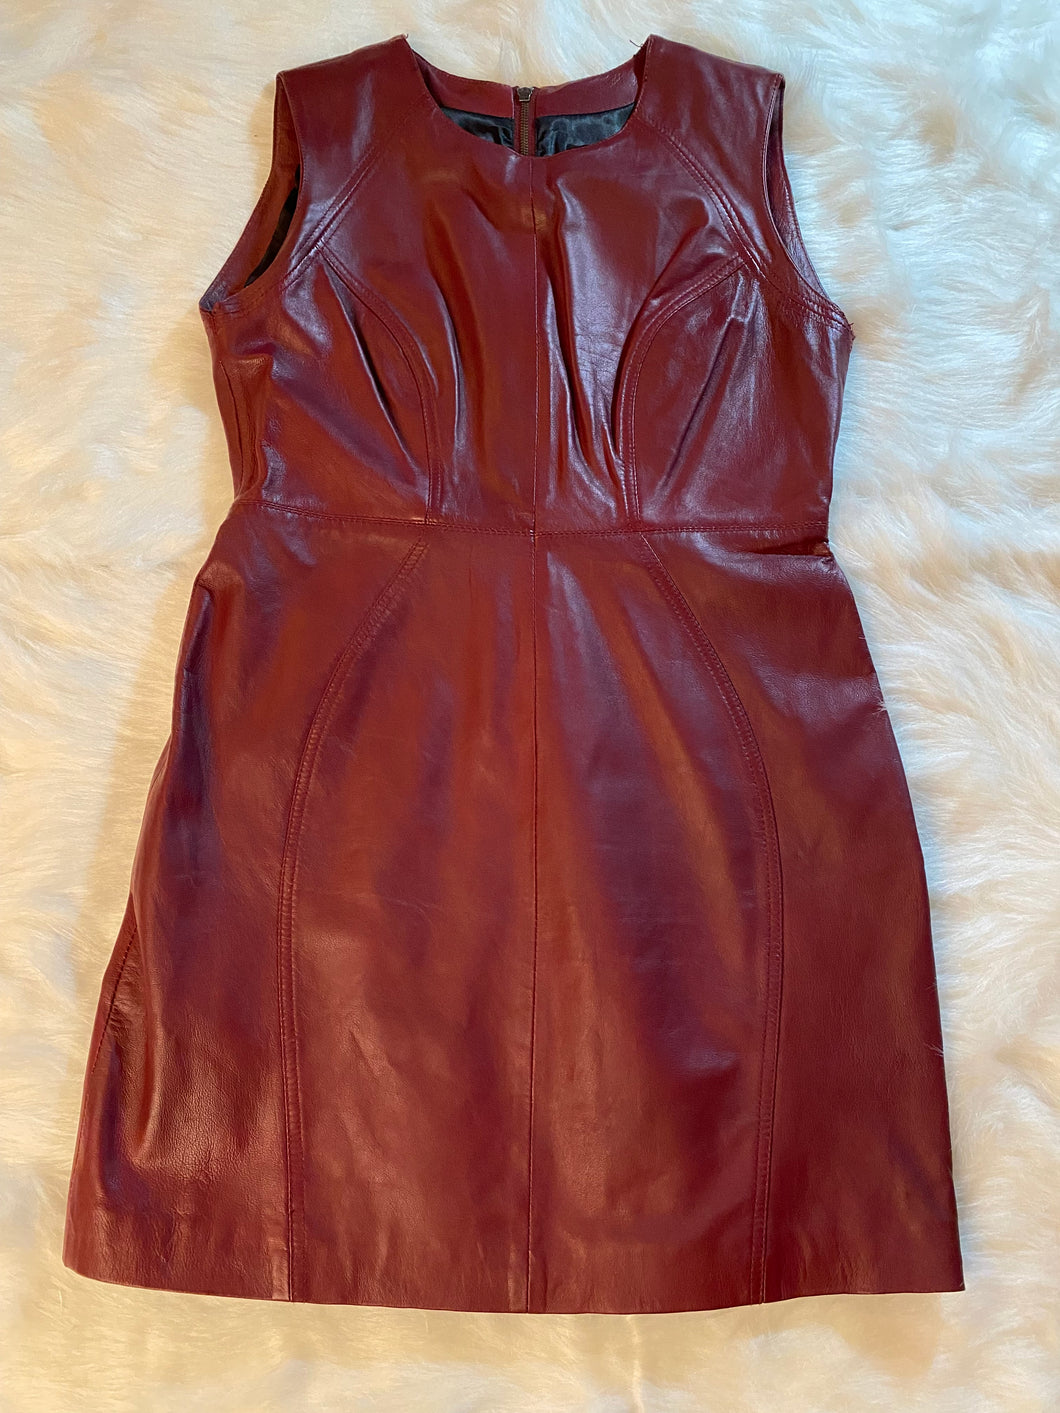 Leather Dress by Aqua